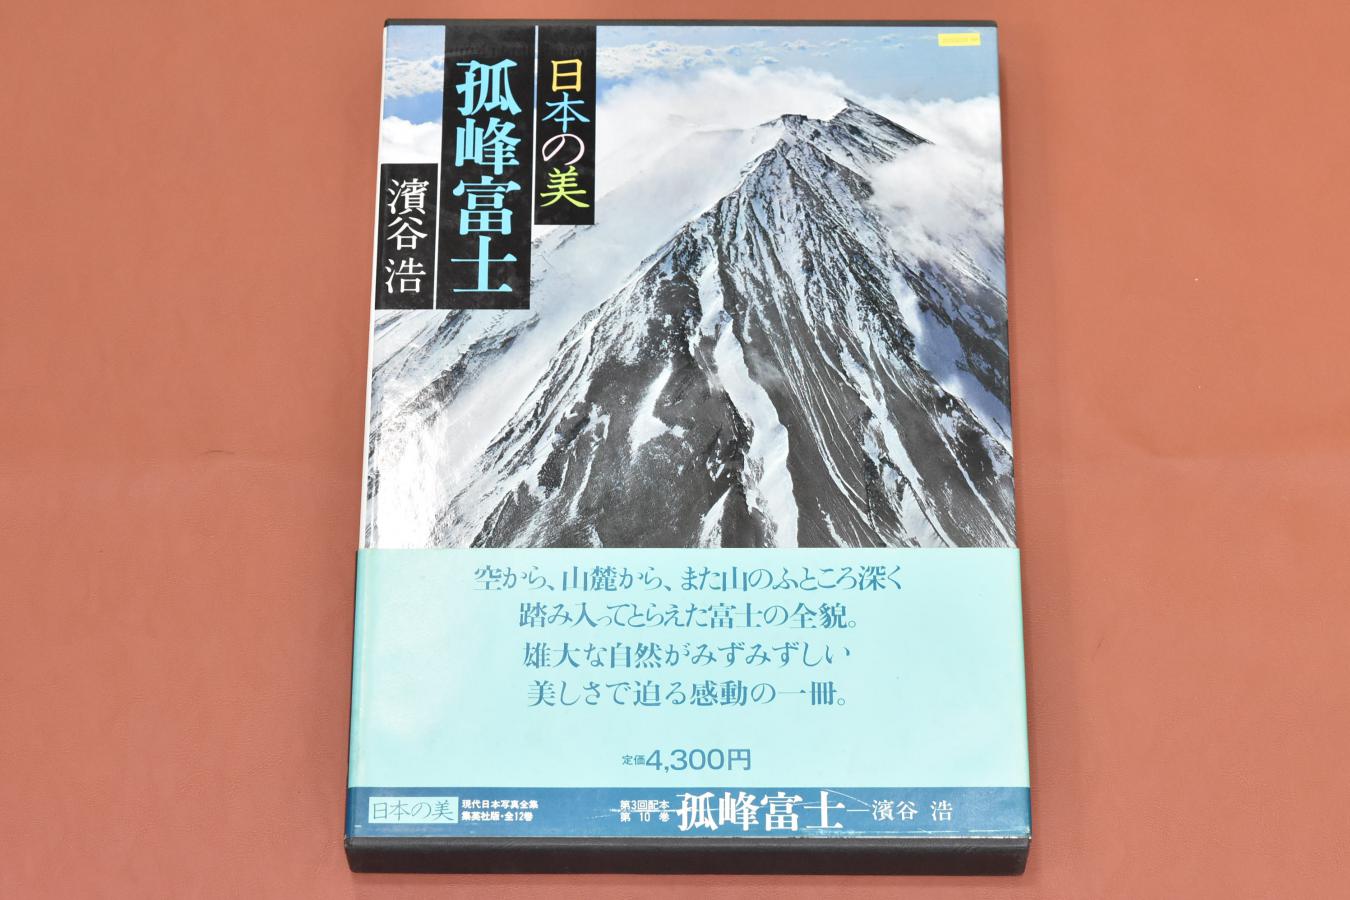 【絶 版 写 真 集】 日本の美 孤峰富士 【現代日本写真全集 濱谷浩】